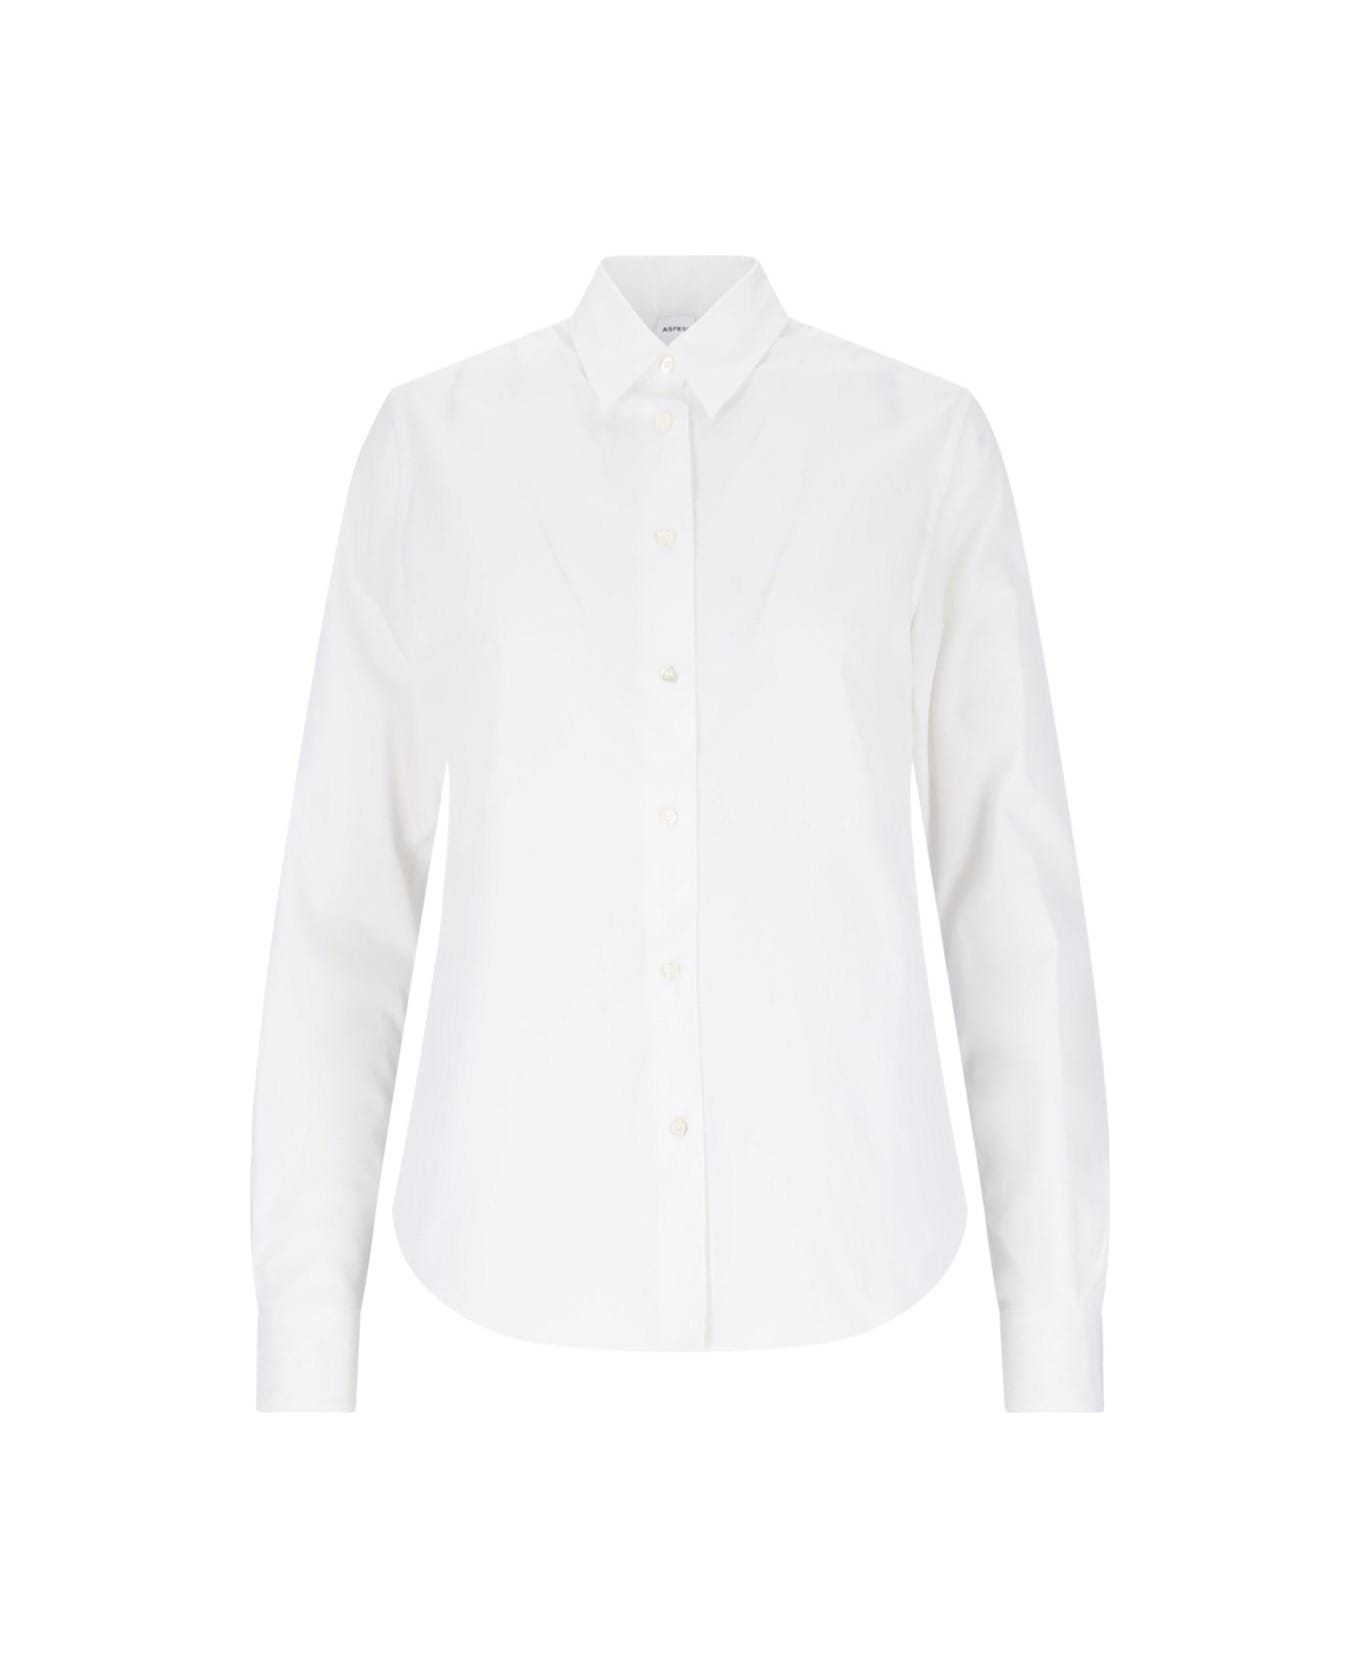 Aspesi Basic Shirt - Bianco シャツ